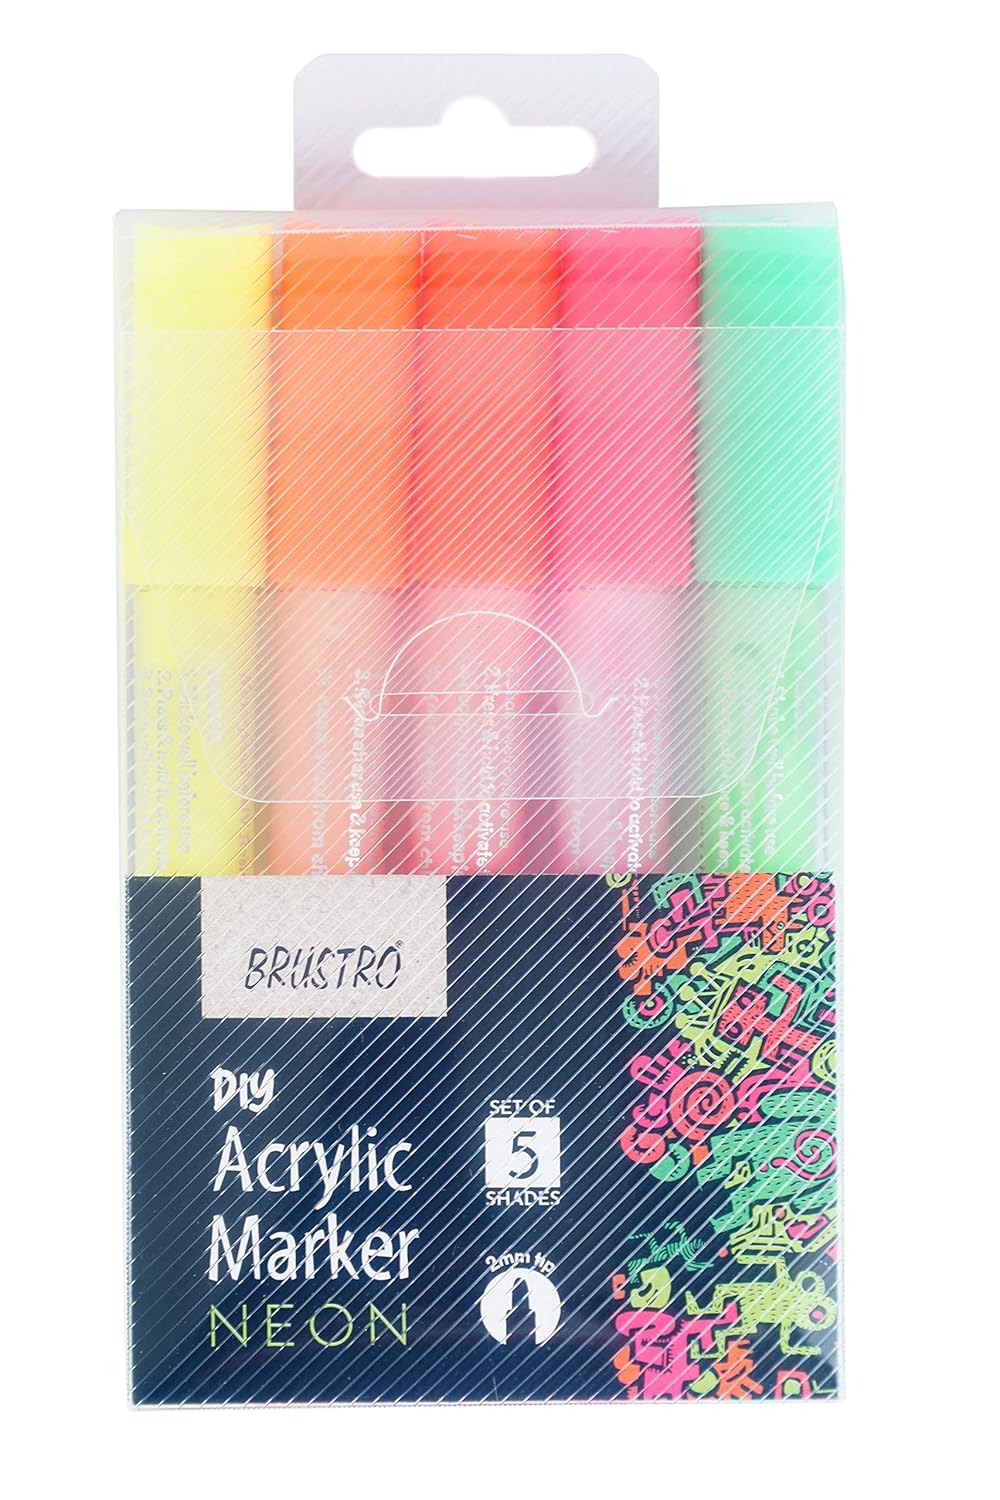 Brustro Diy Acrylic Marker Neon Set 5 Shades